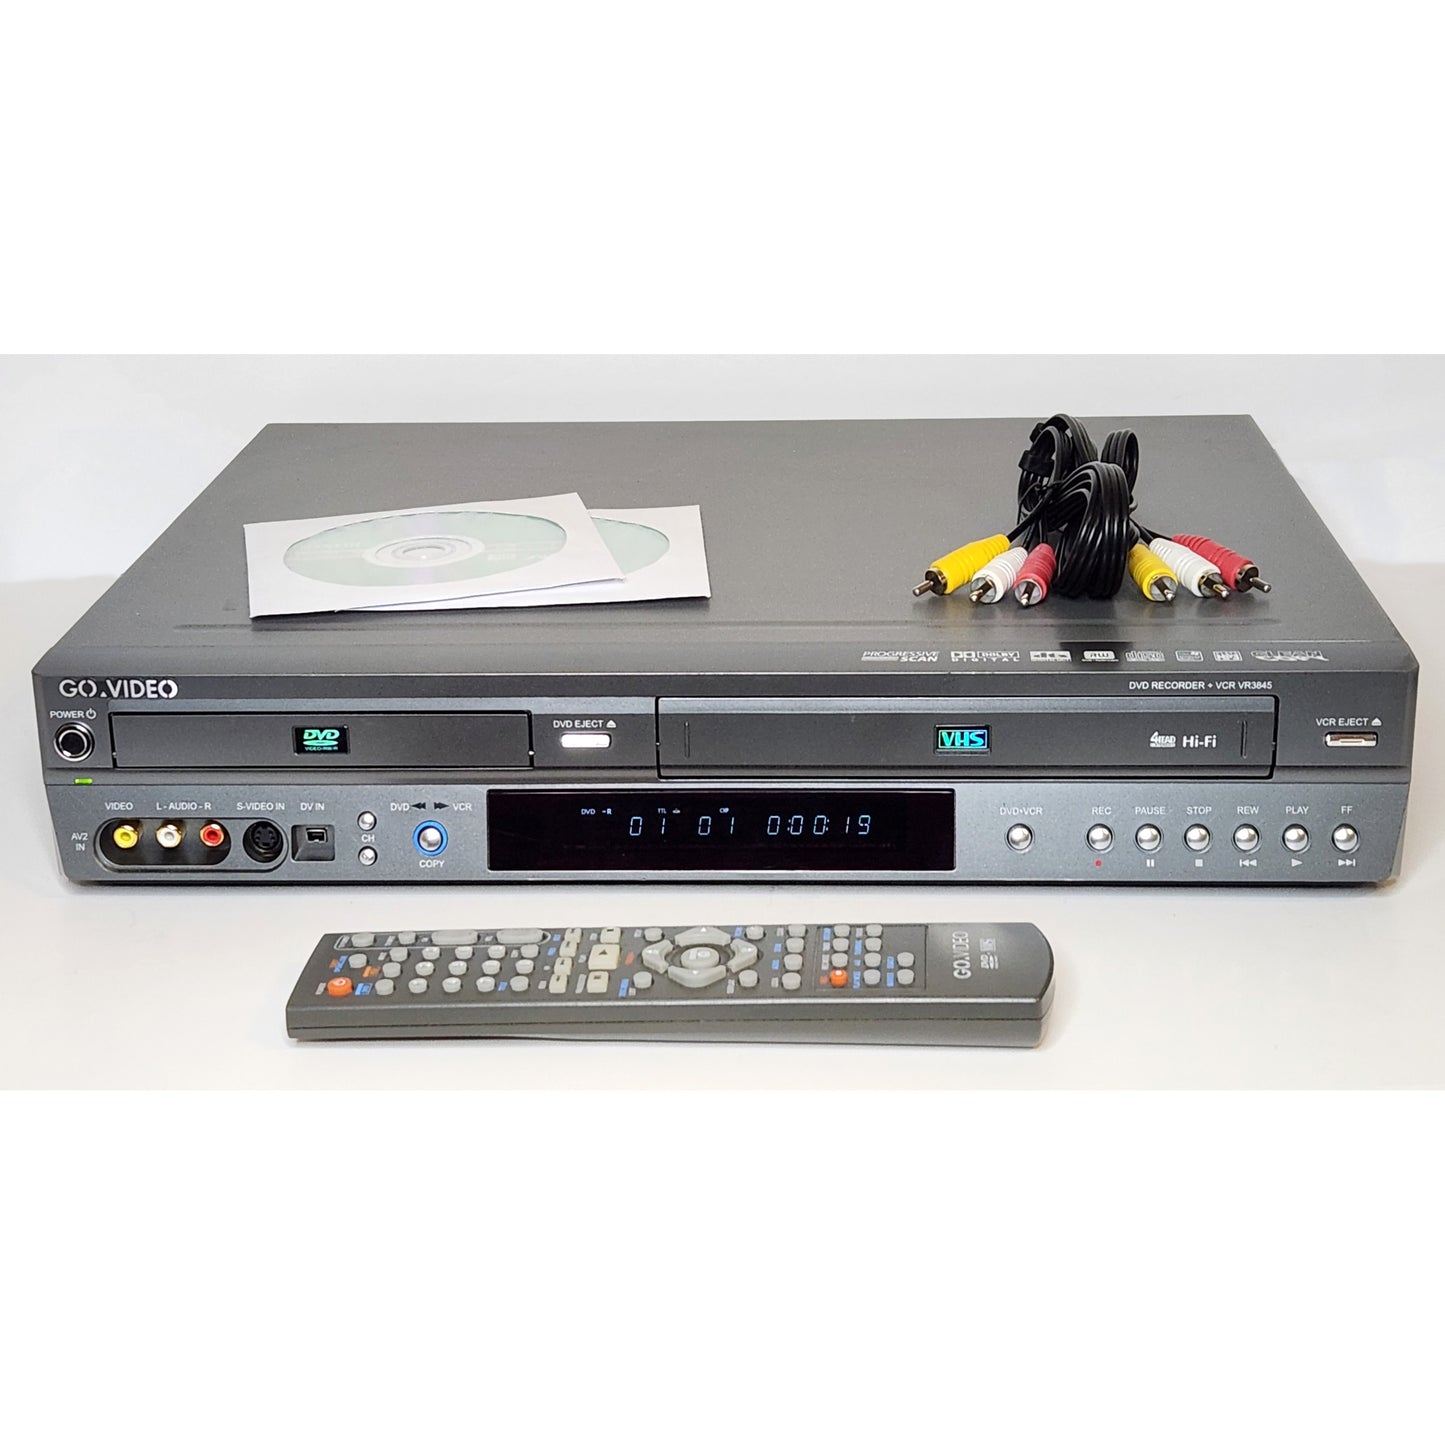 GoVideo VR3845 VCR/DVD Recorder Combo